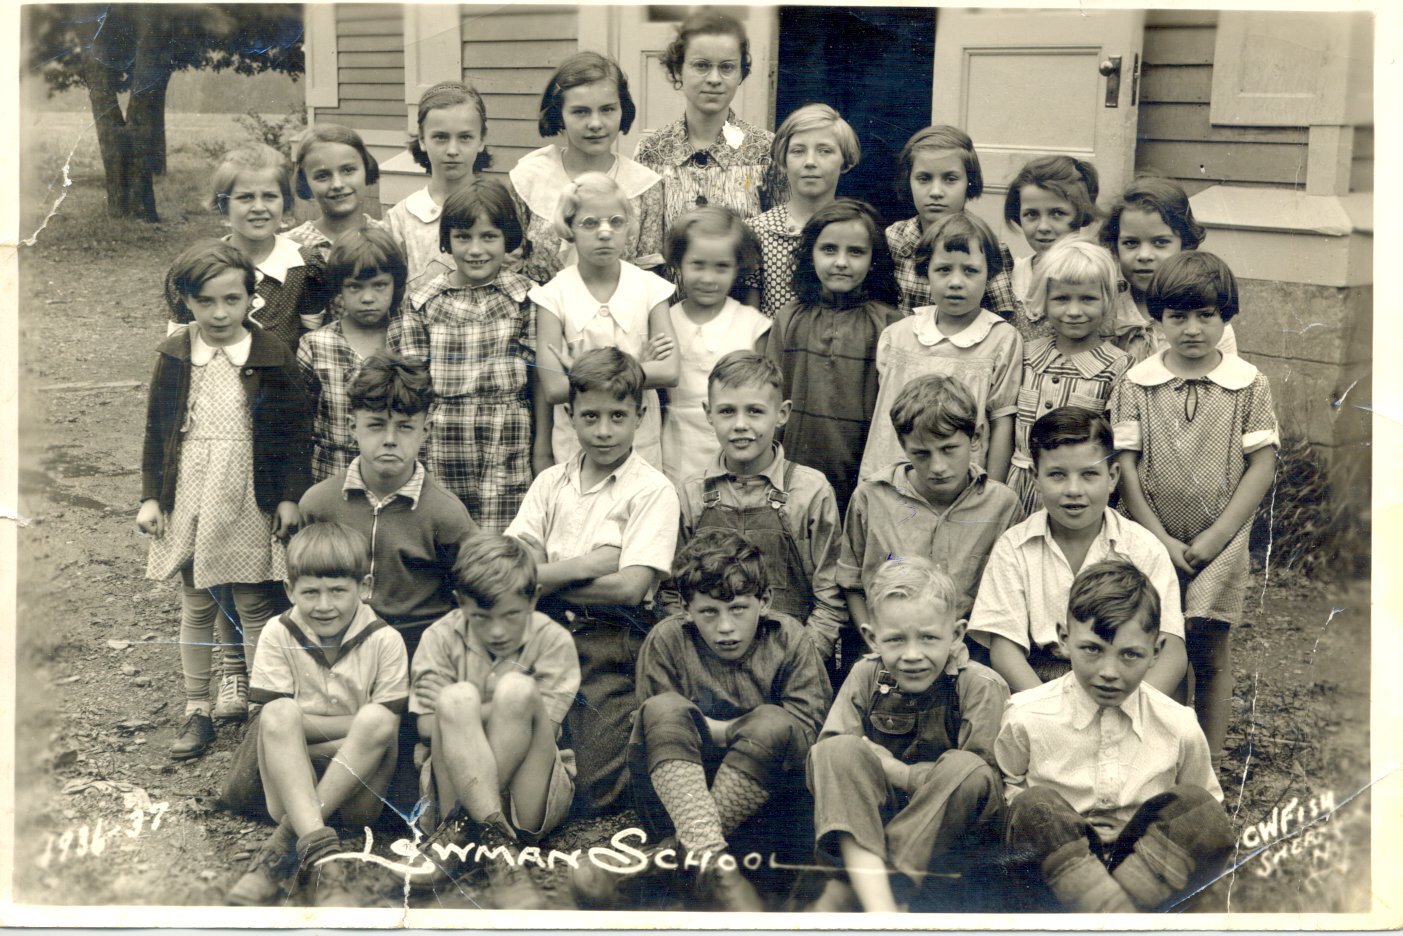 Lowman School 1936-1937 School year